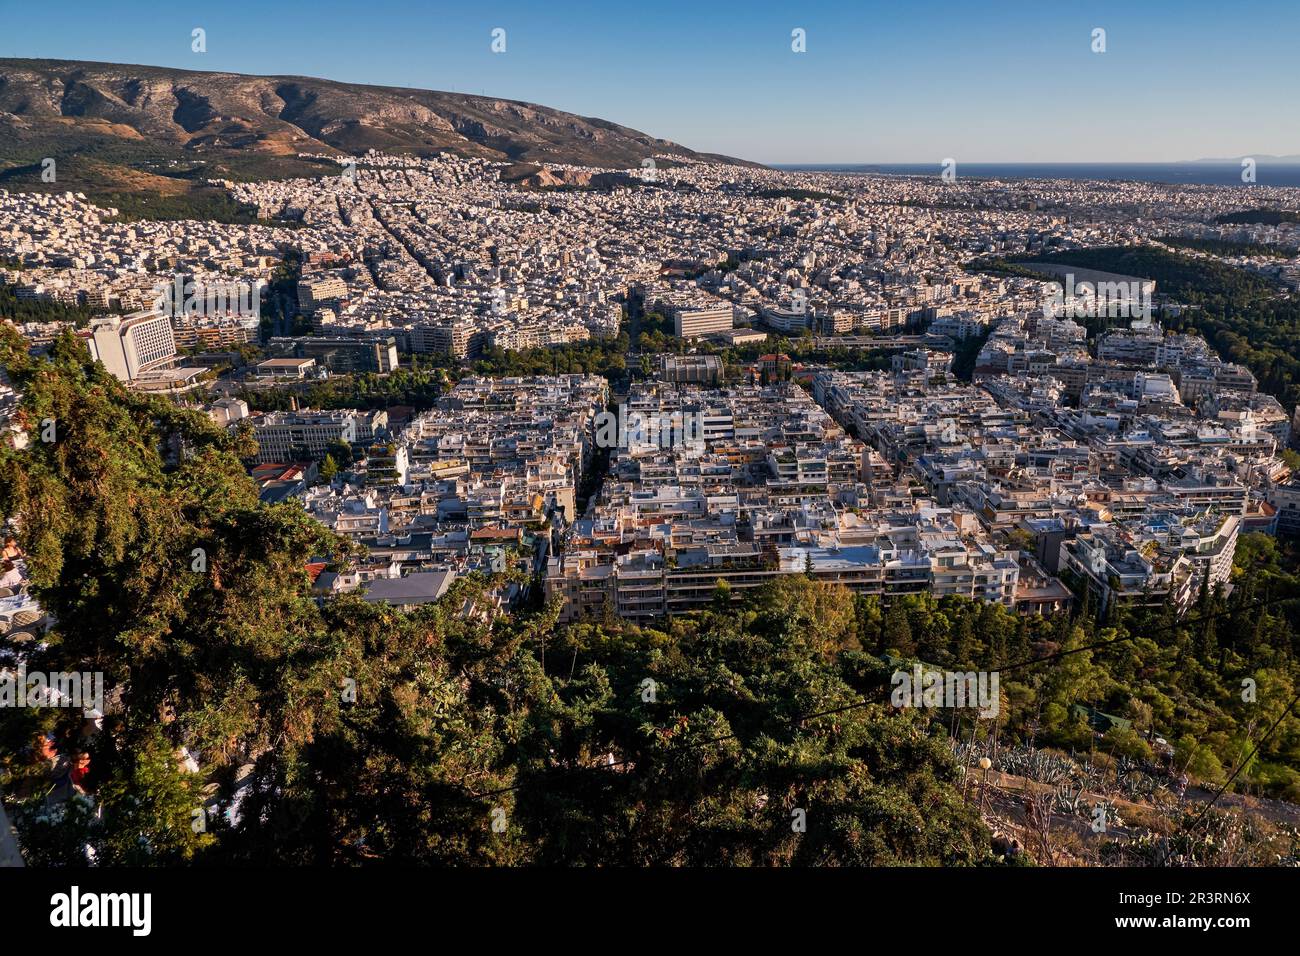 Vue panoramique d'Athènes depuis la colline du Lycabette au coucher du soleil - Grèce Banque D'Images